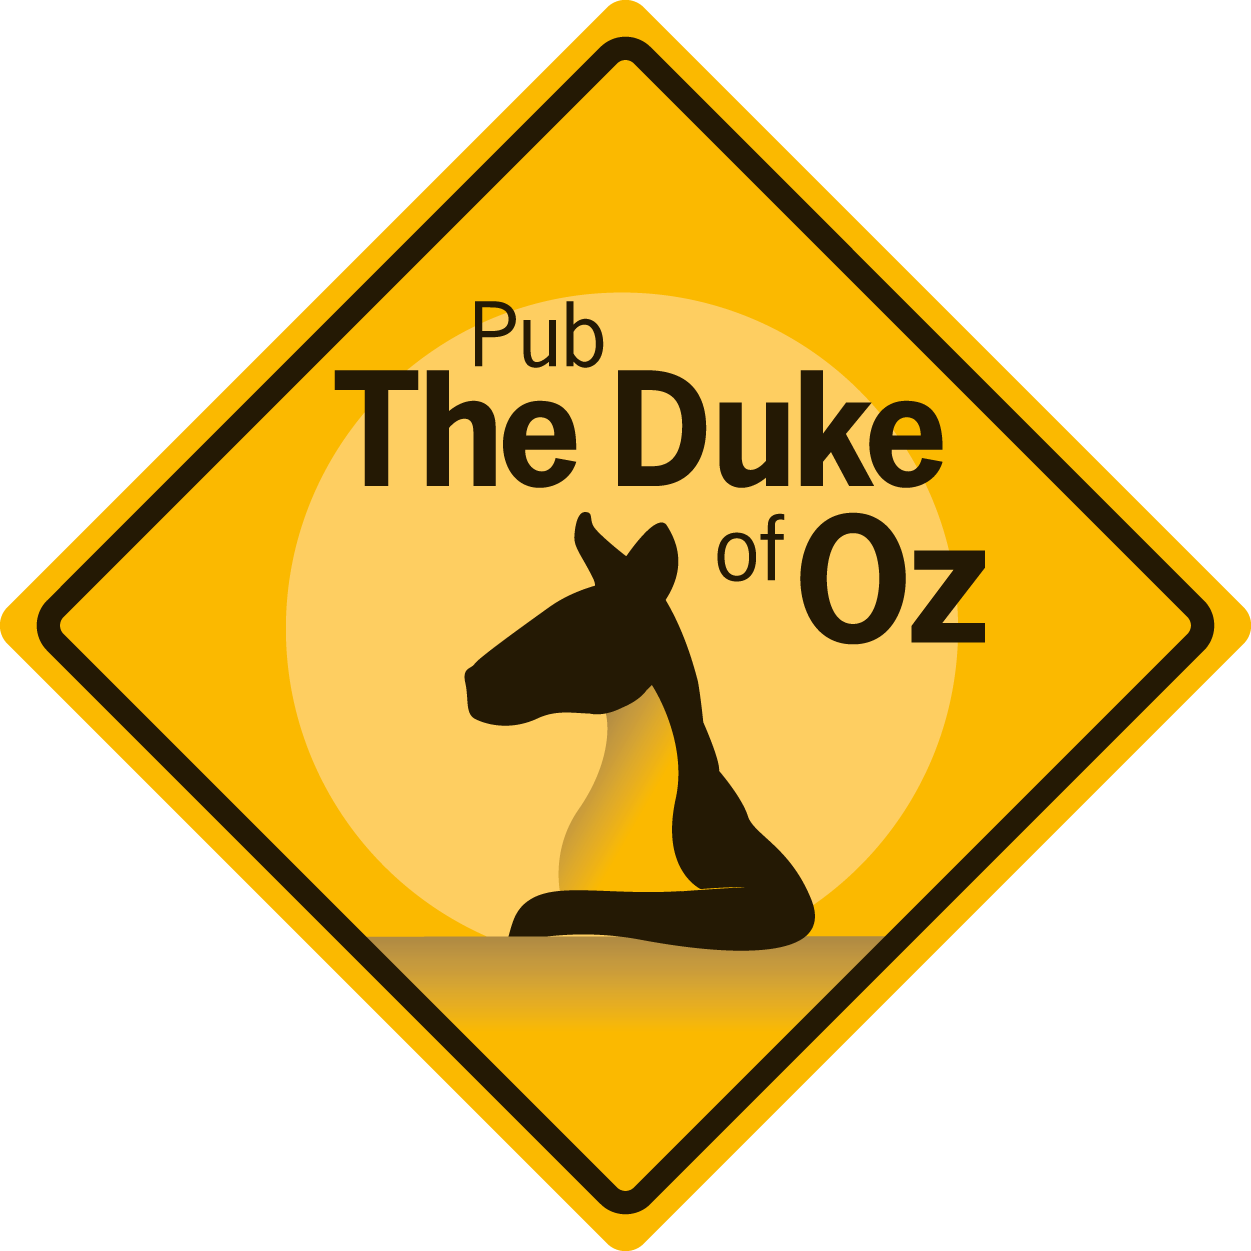 The Duke of Oz